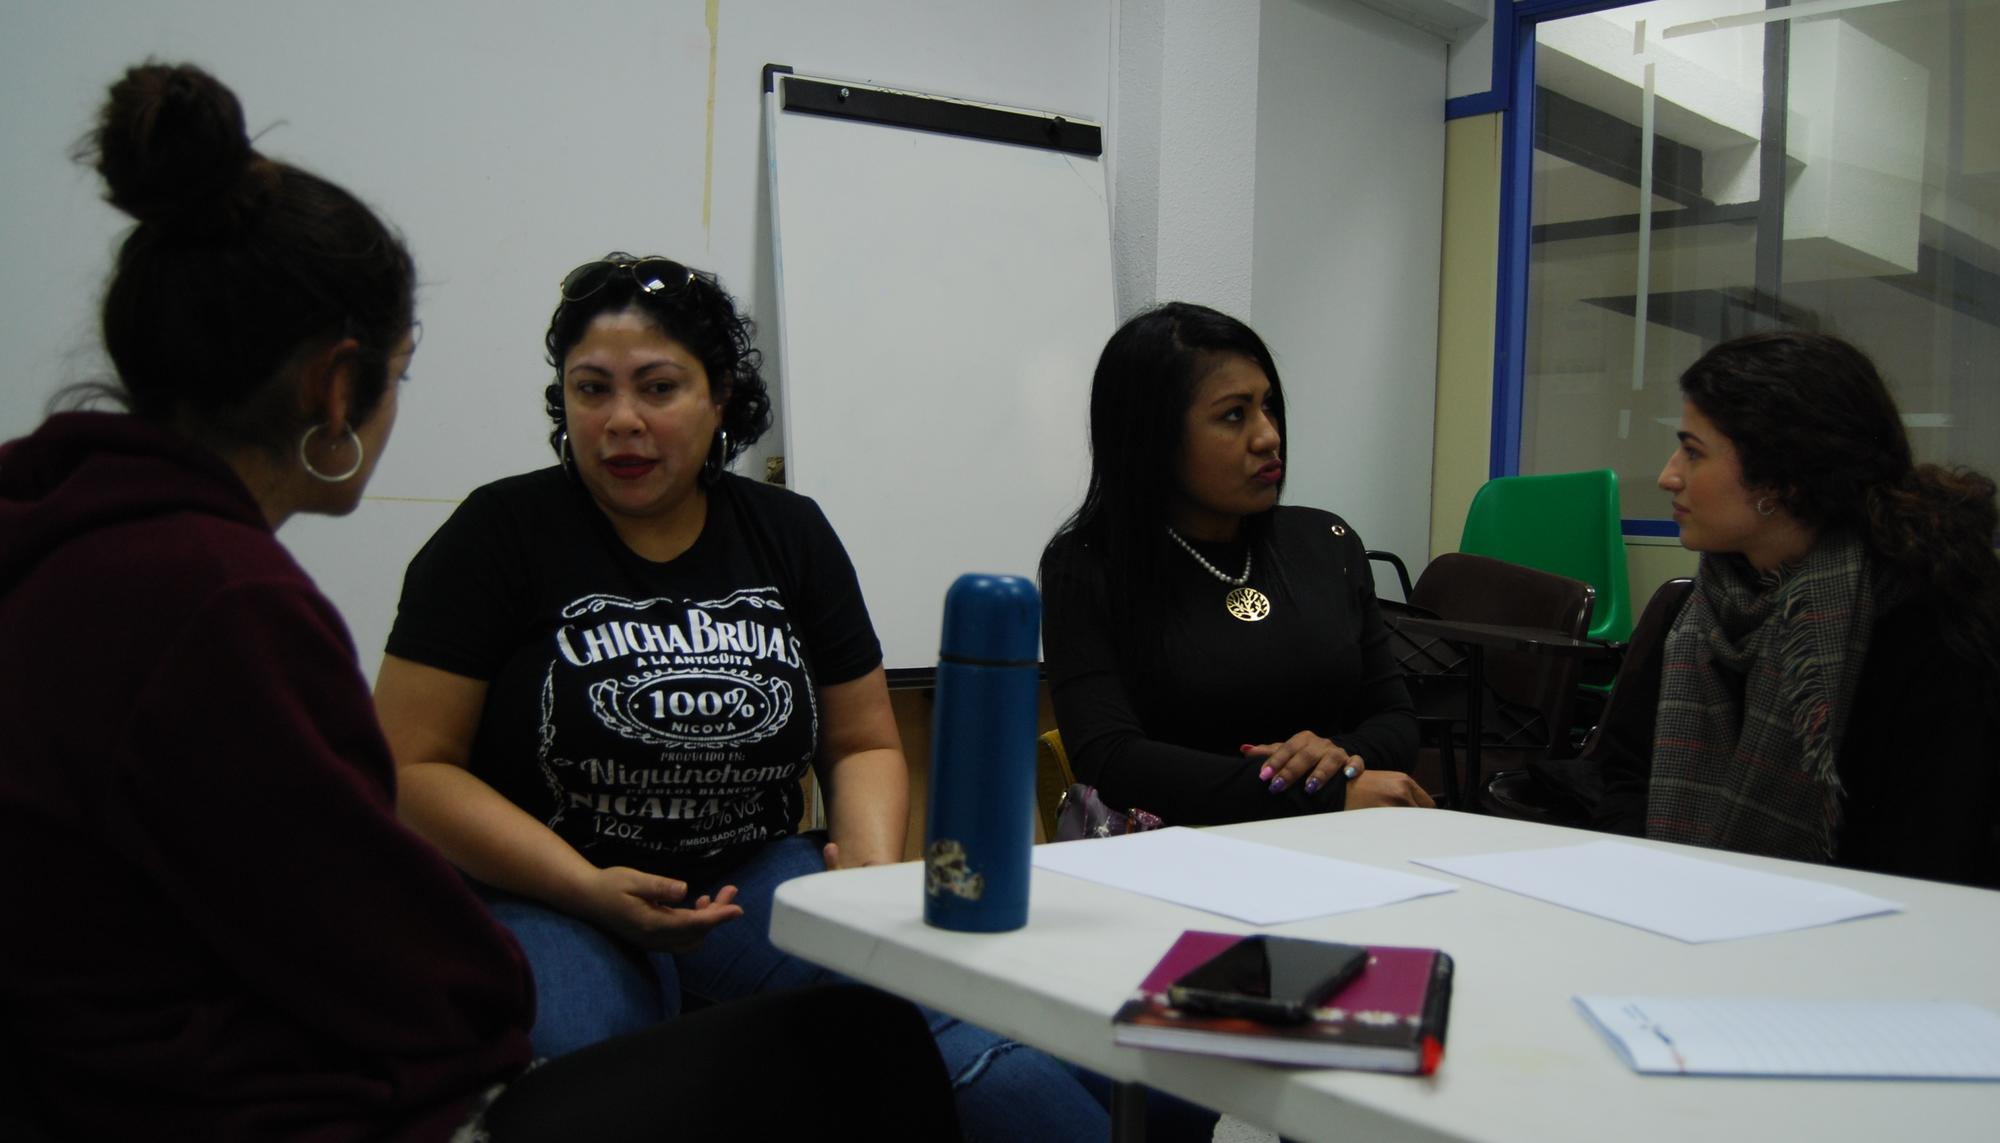 Mujeres migrantes en el proyecto Feministas cooperando